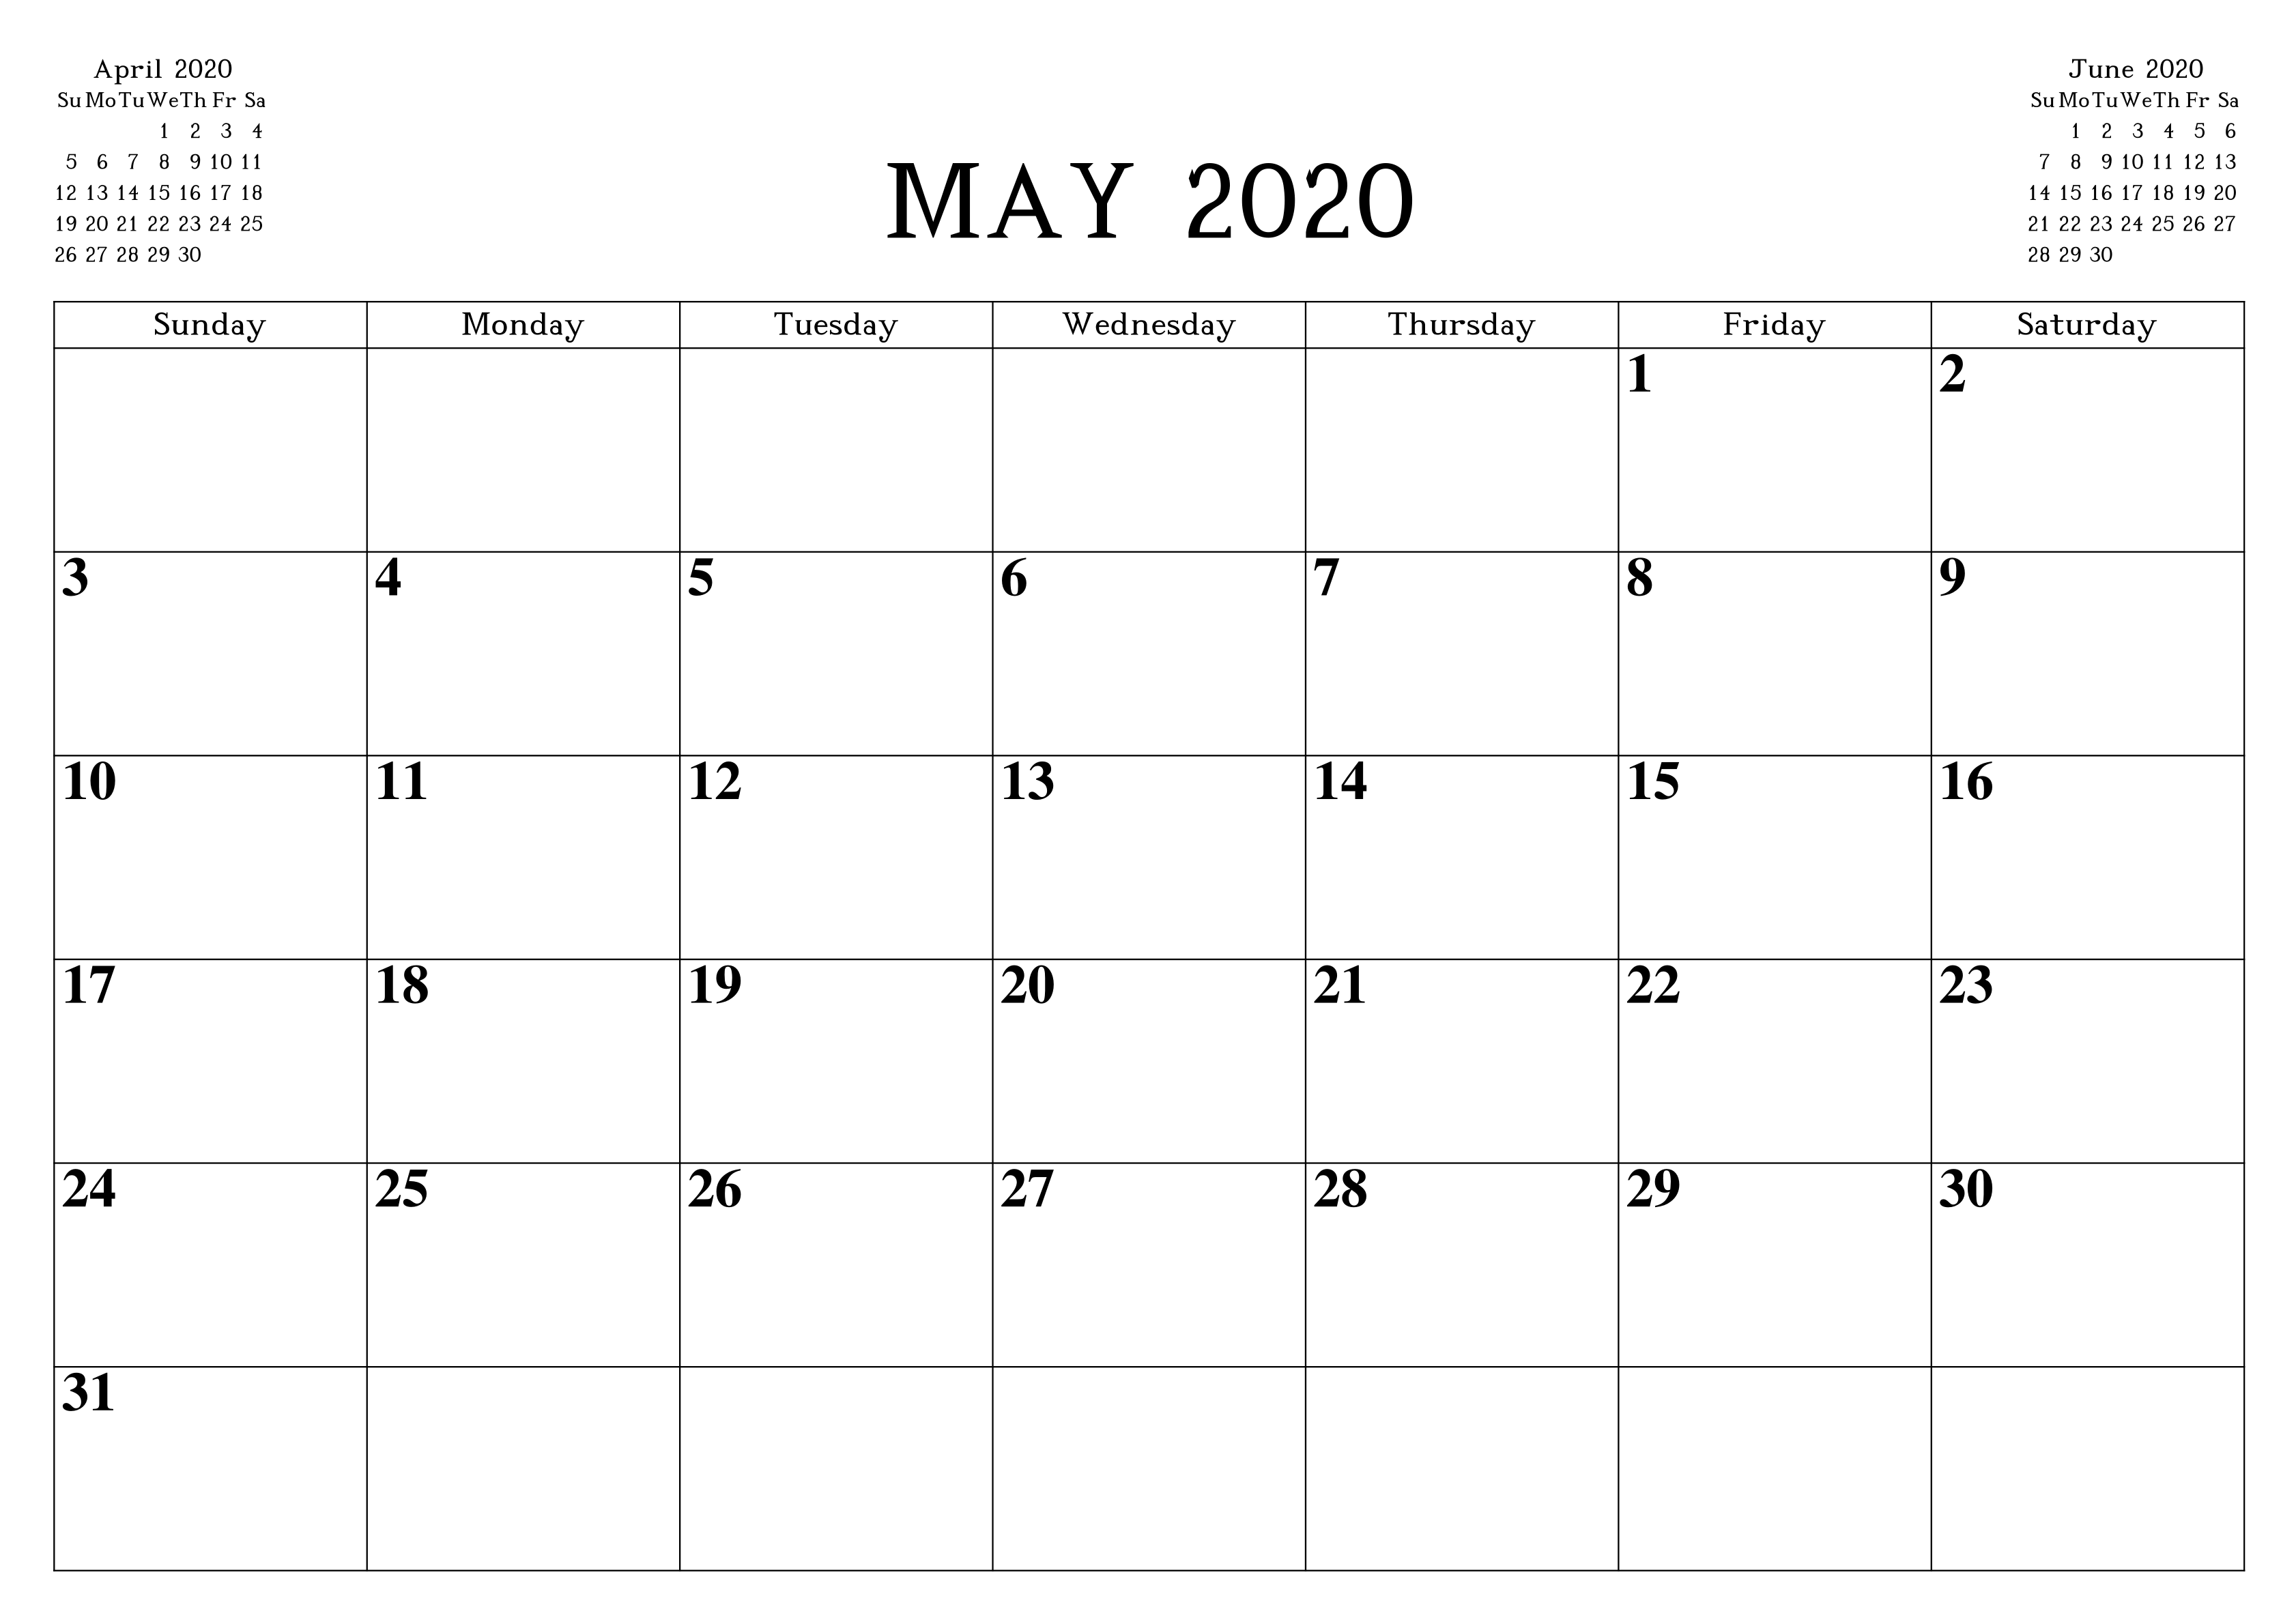 waterproof calendar may 2021 May 2020 Calendar Printable Word Pdf Waterproof Free Printable Blank Holidays Calendar Wishes Images Template waterproof calendar may 2021